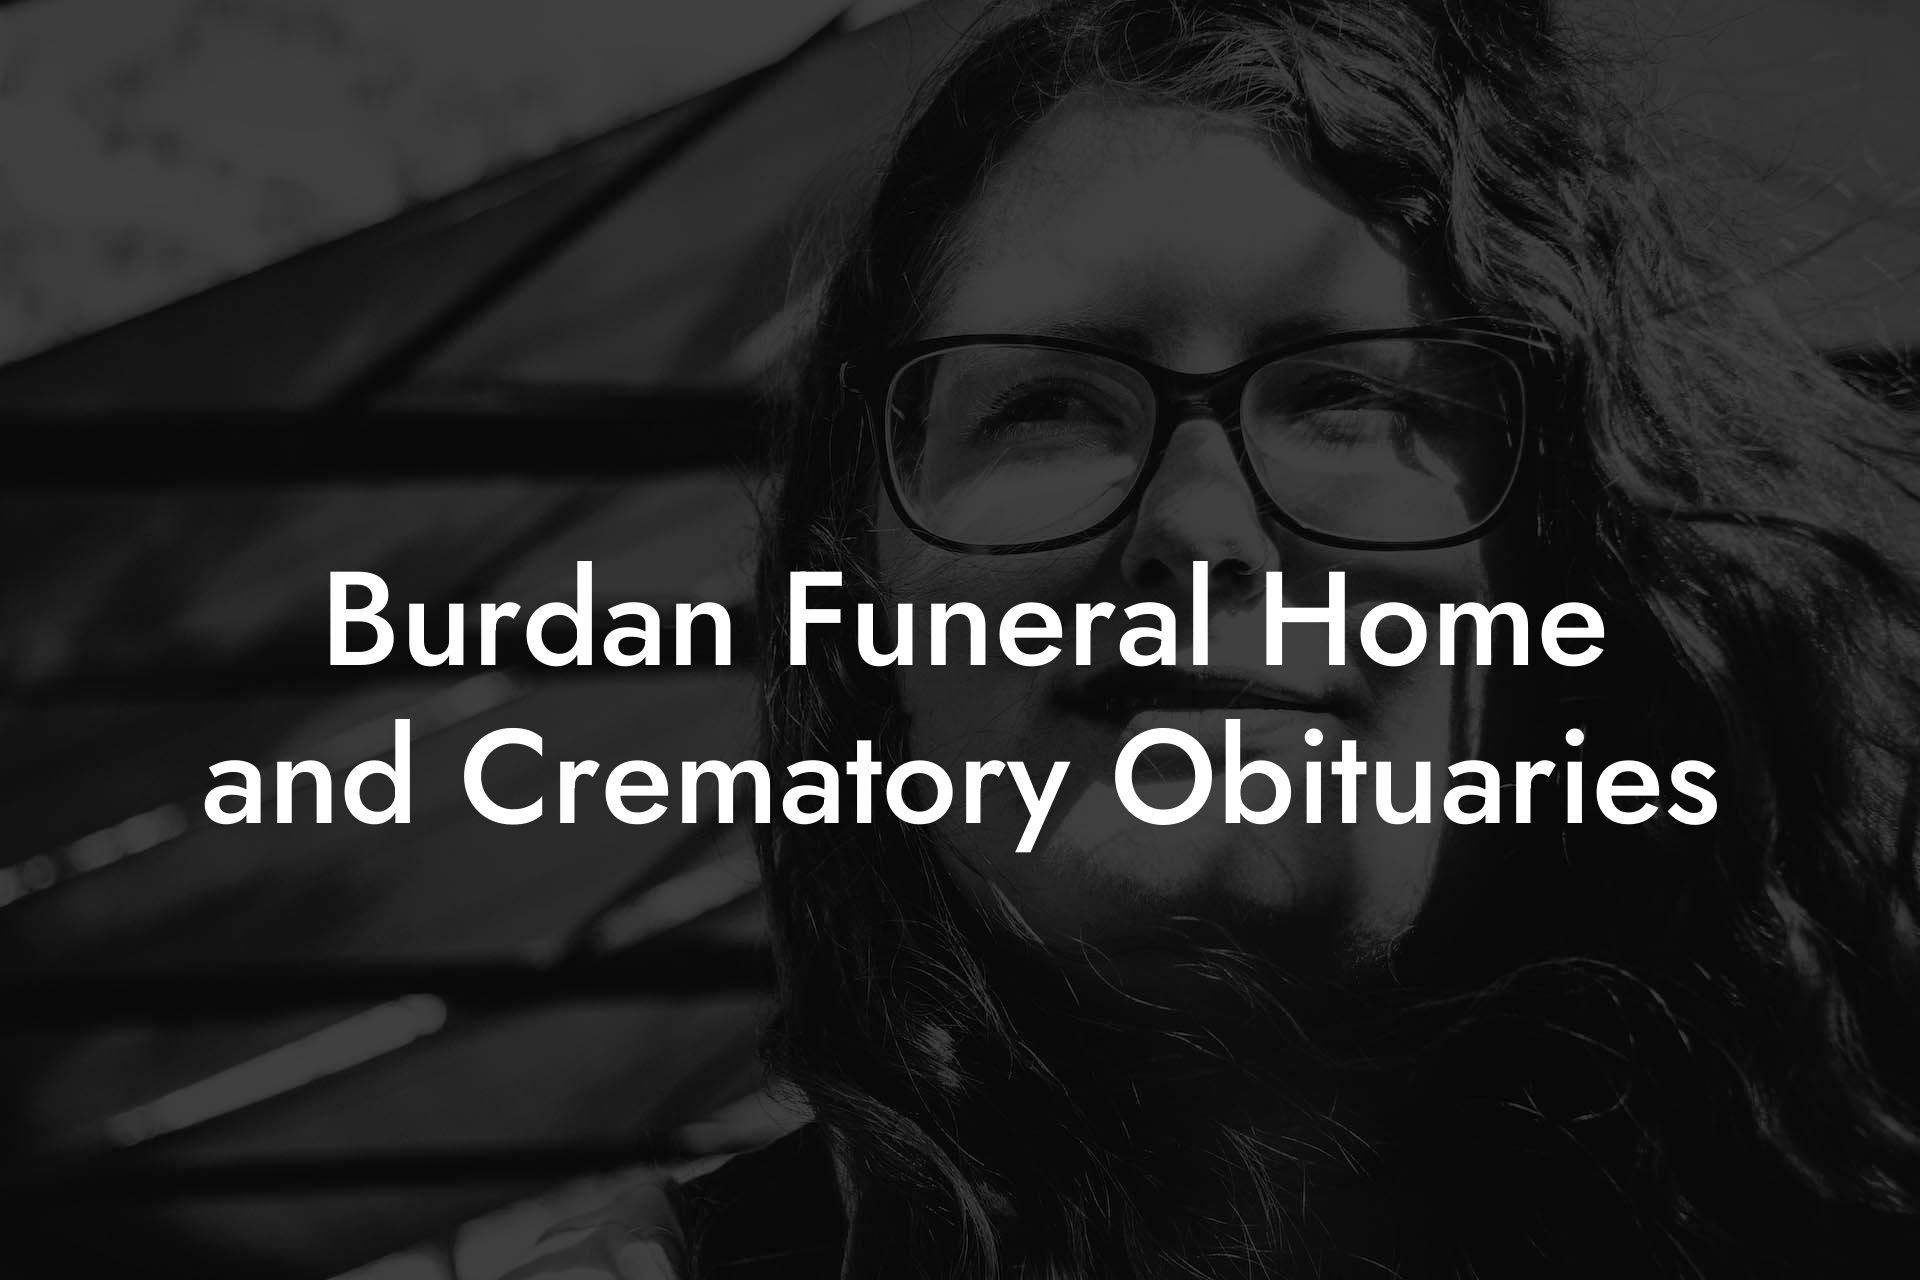 Burdan Funeral Home and Crematory Obituaries